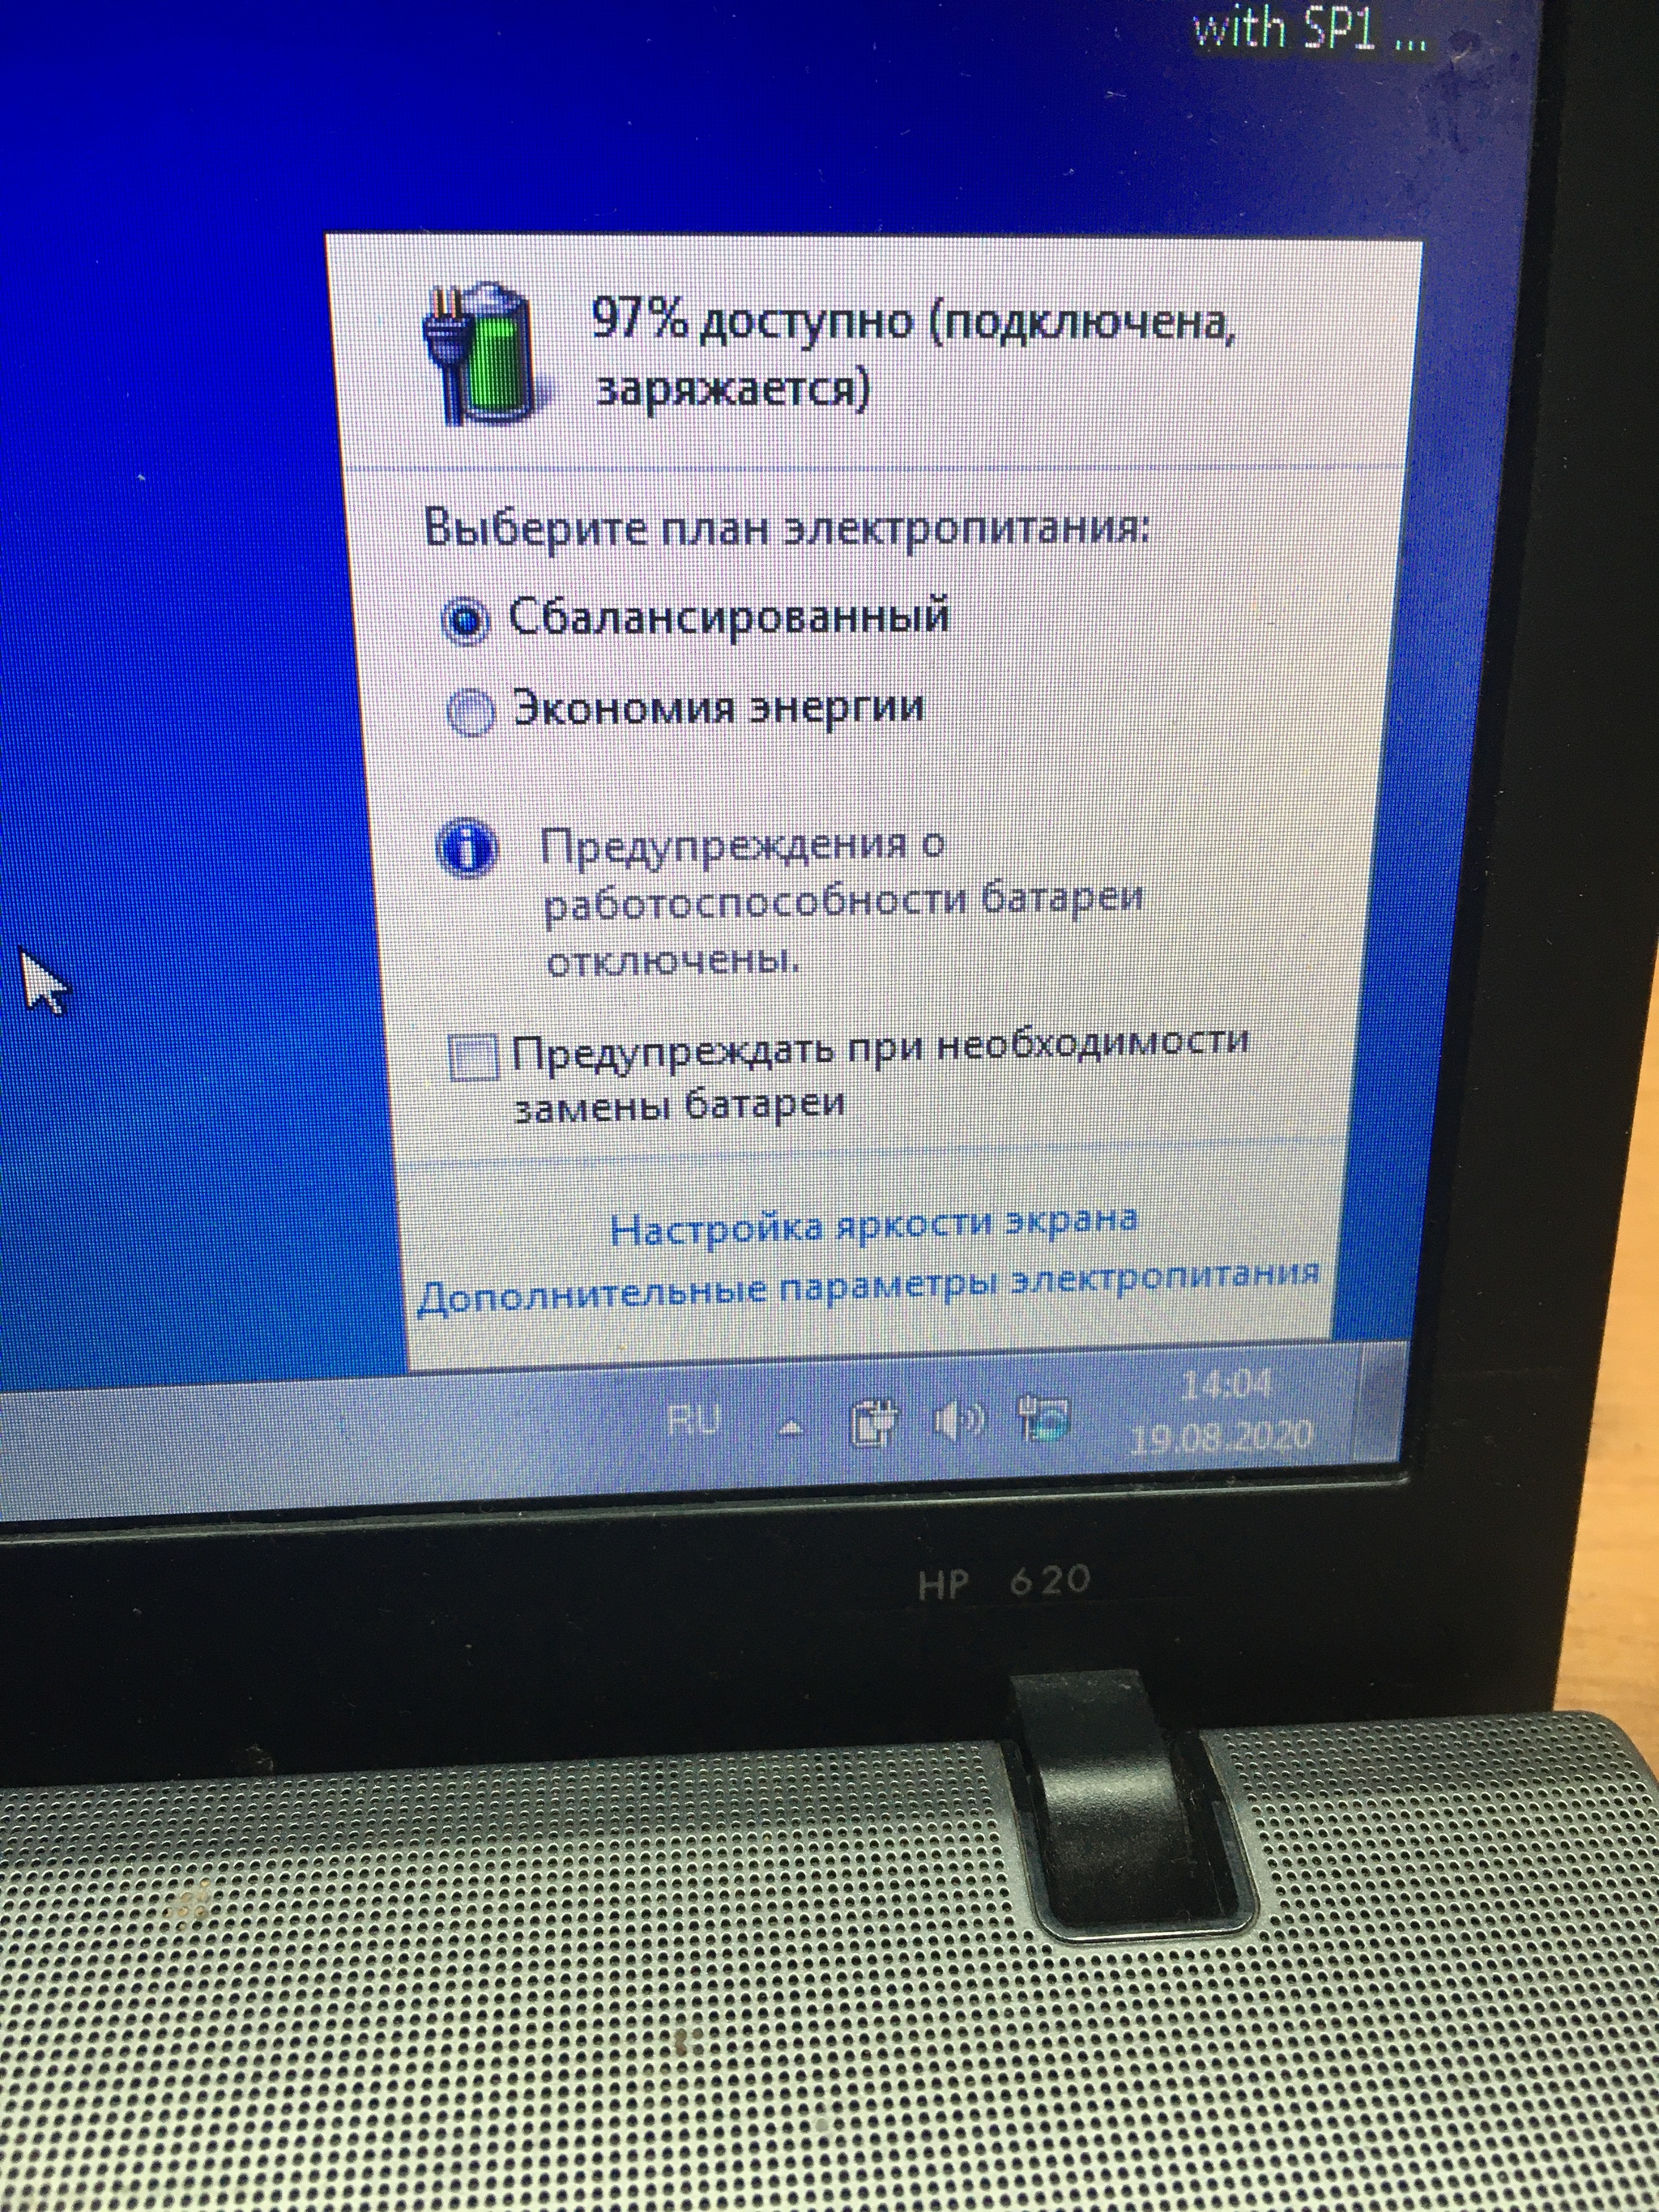 Ноутбук Hp 620 Цена В России